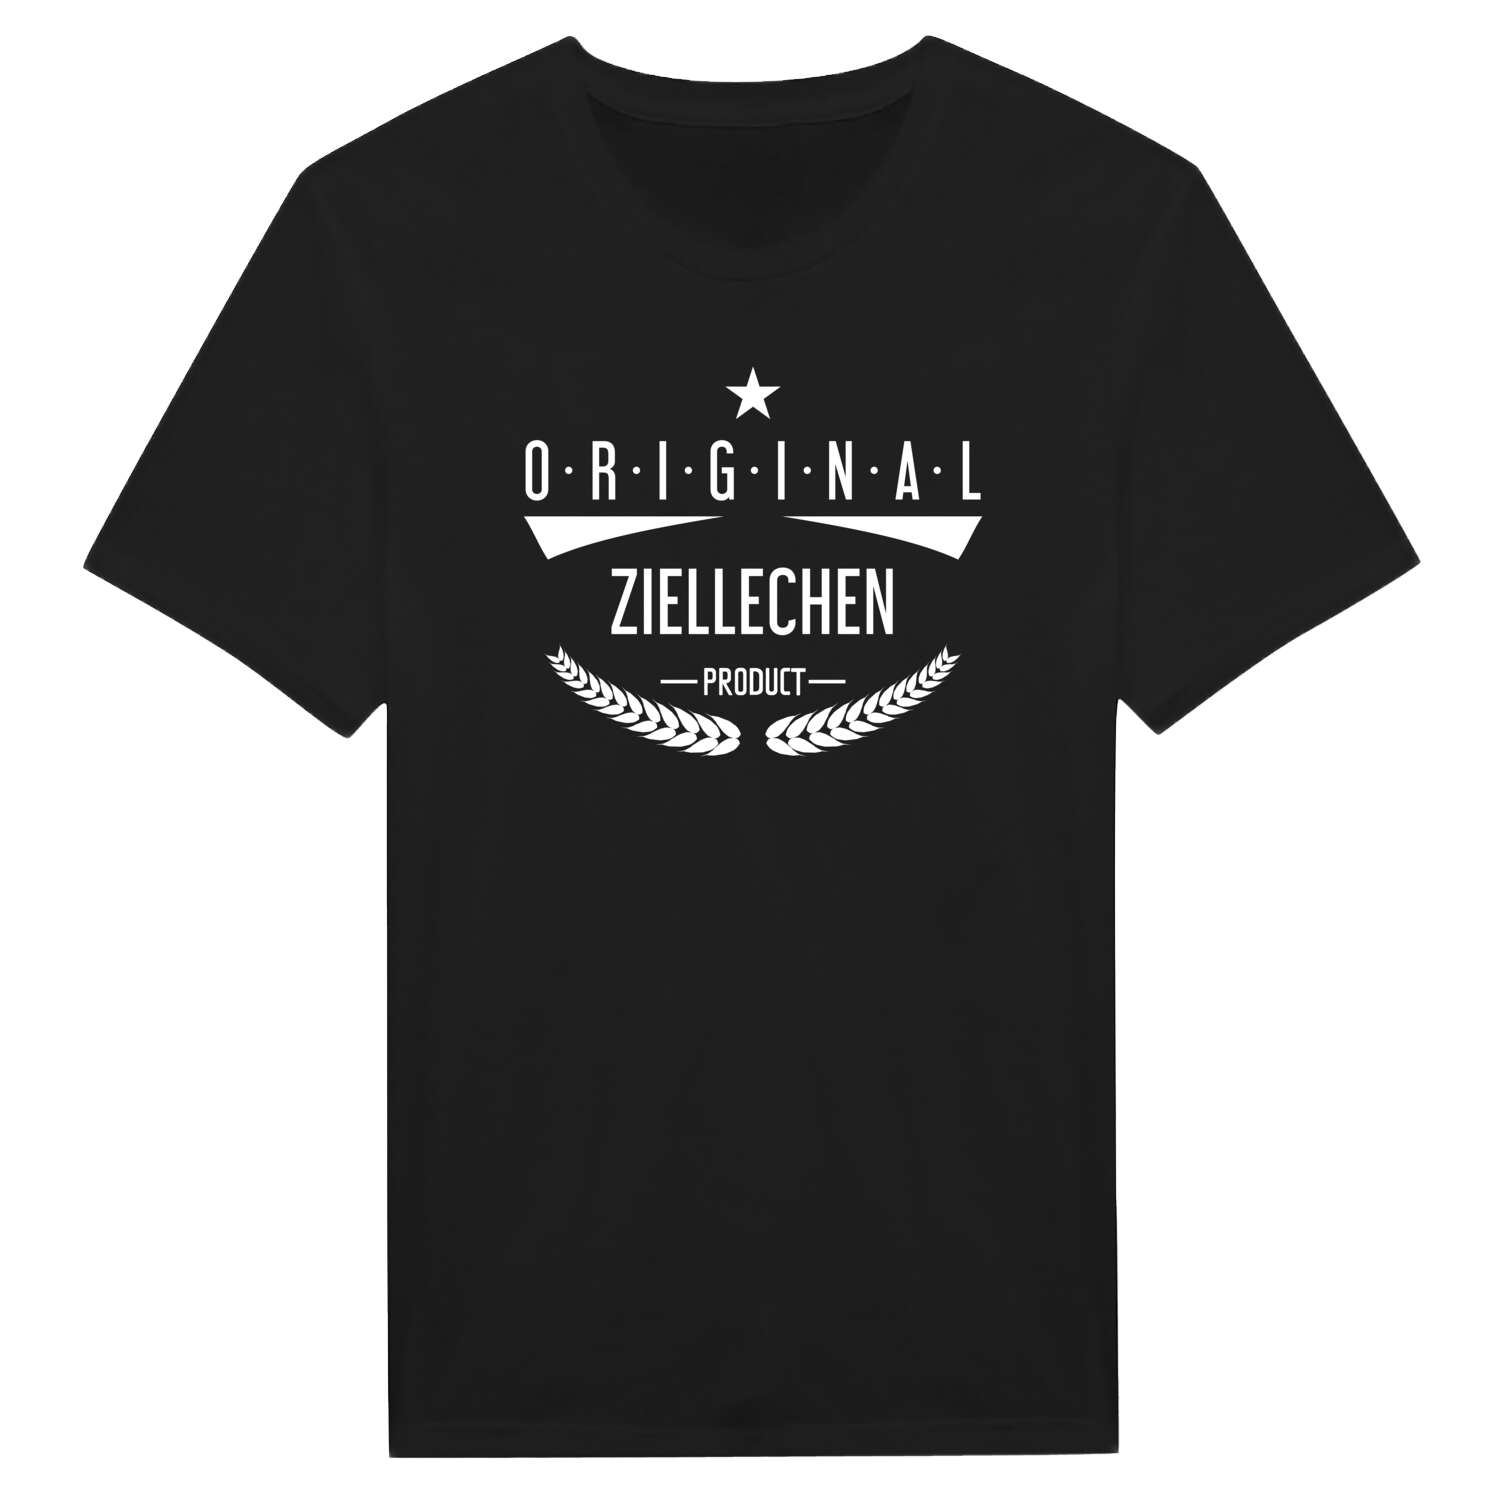 Ziellechen T-Shirt »Original Product«